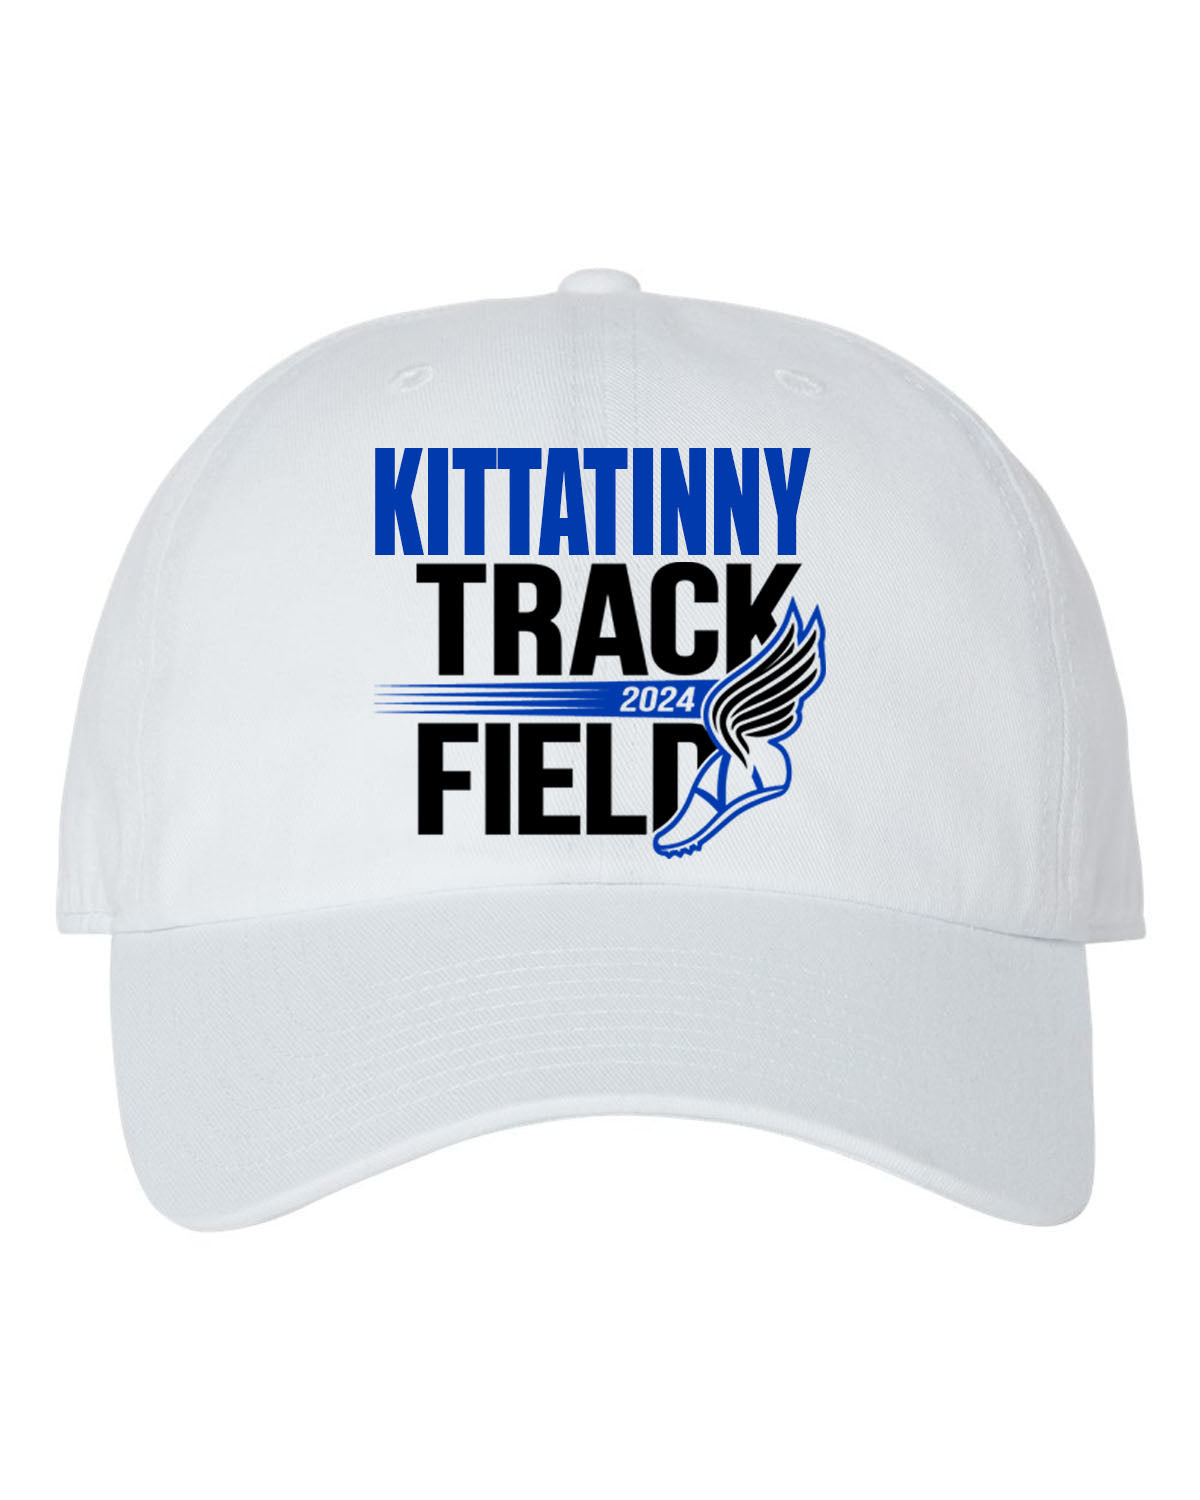 Kittatinny Track Design 6 Trucker Hat